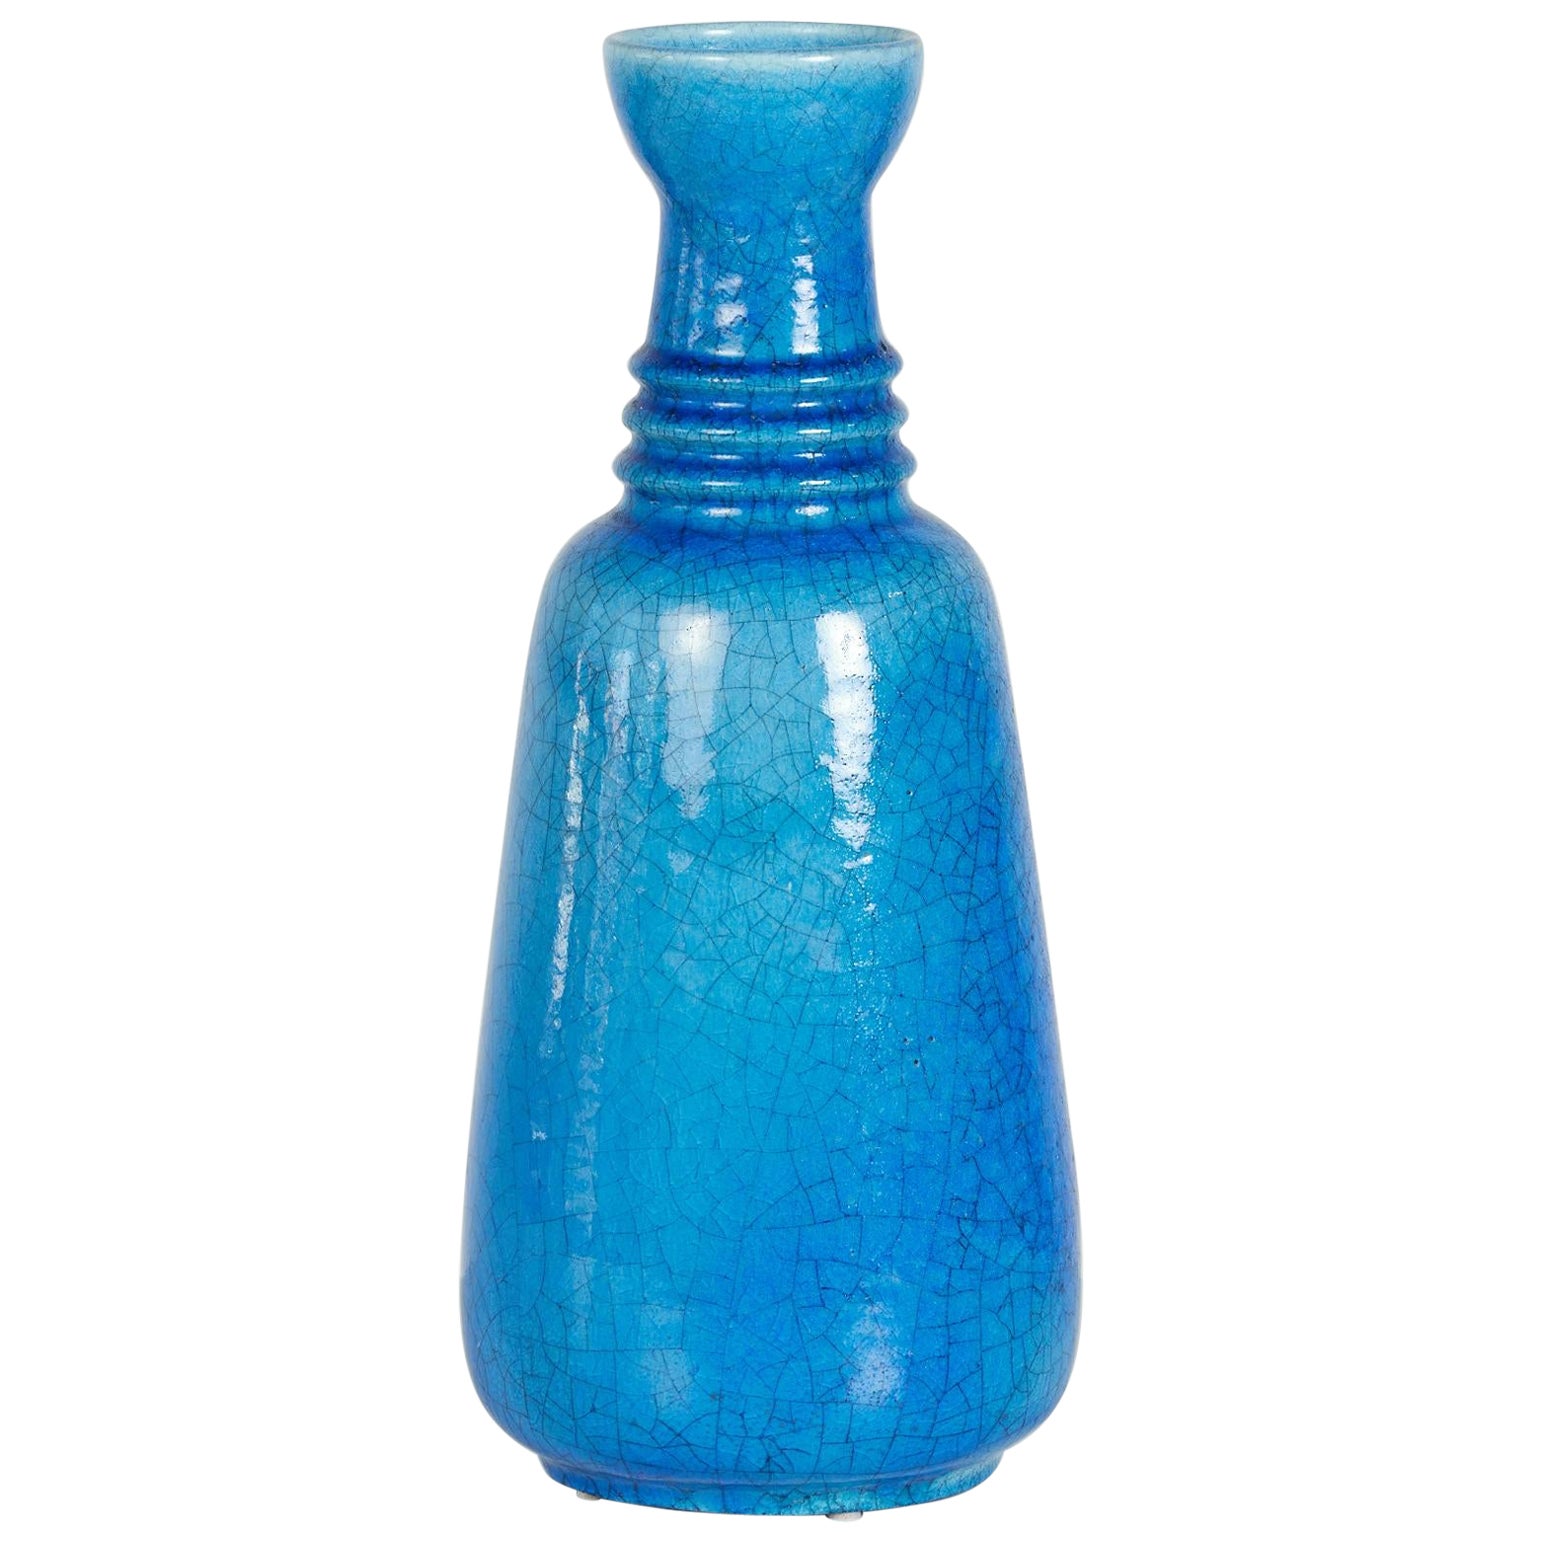 Arnold Zahner Large Scale Blue Glazed Ceramic Vase For Sale